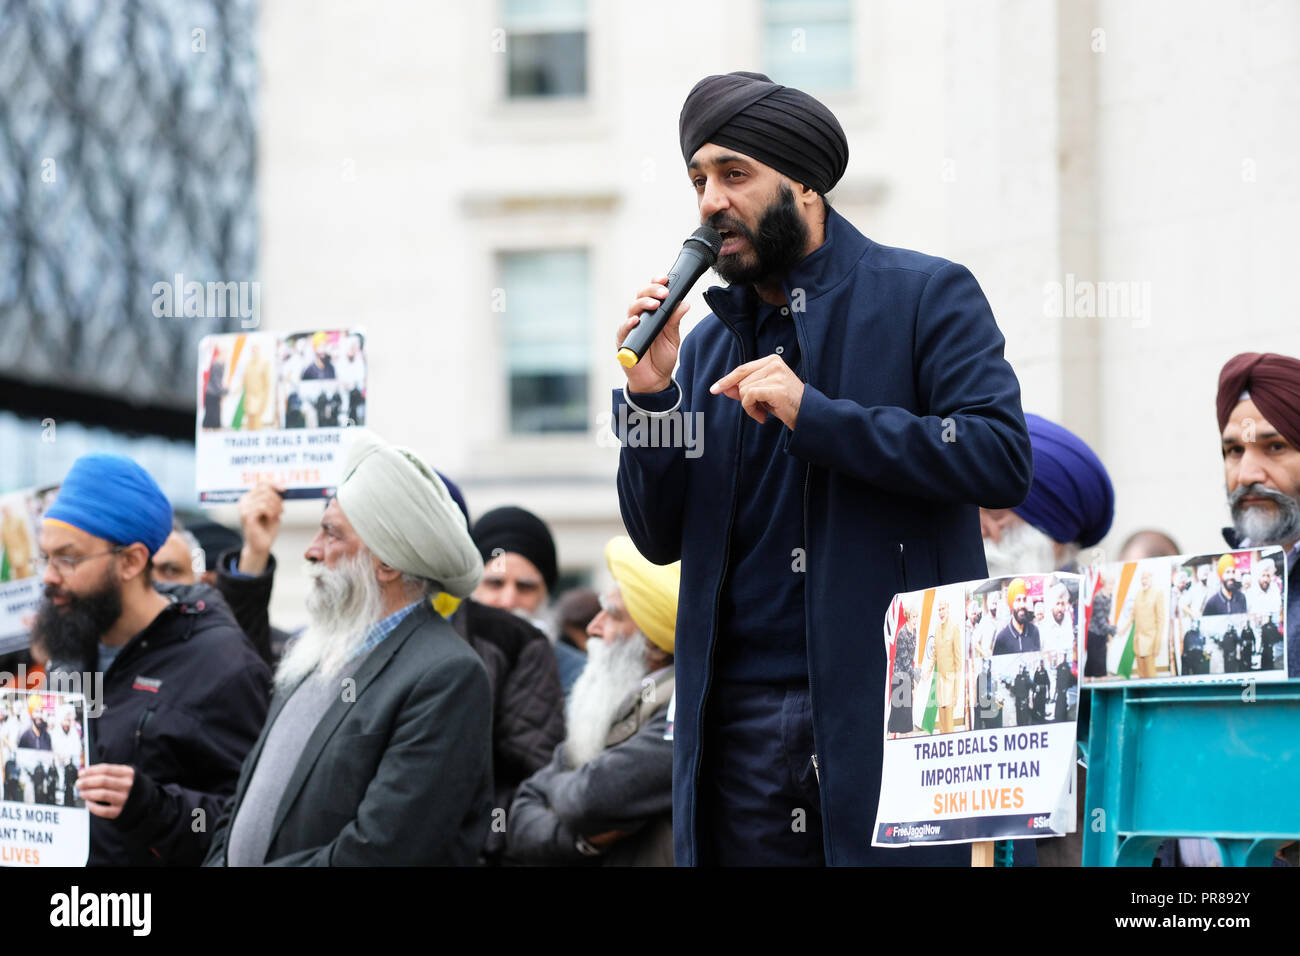 Birmingham, Regno Unito - 30 settembre 2018. Altoparlante a una manifestazione di protesta per chiedere il rilascio di Jagtar Singh Johal, 31 anni Sikh inglesi dalla Scozia detenuti in India per quasi un anno - la protesta è stata organizzata dalla Libera Jaggi ora gruppo. Foto Steven Maggio / Alamy Live News Foto Stock